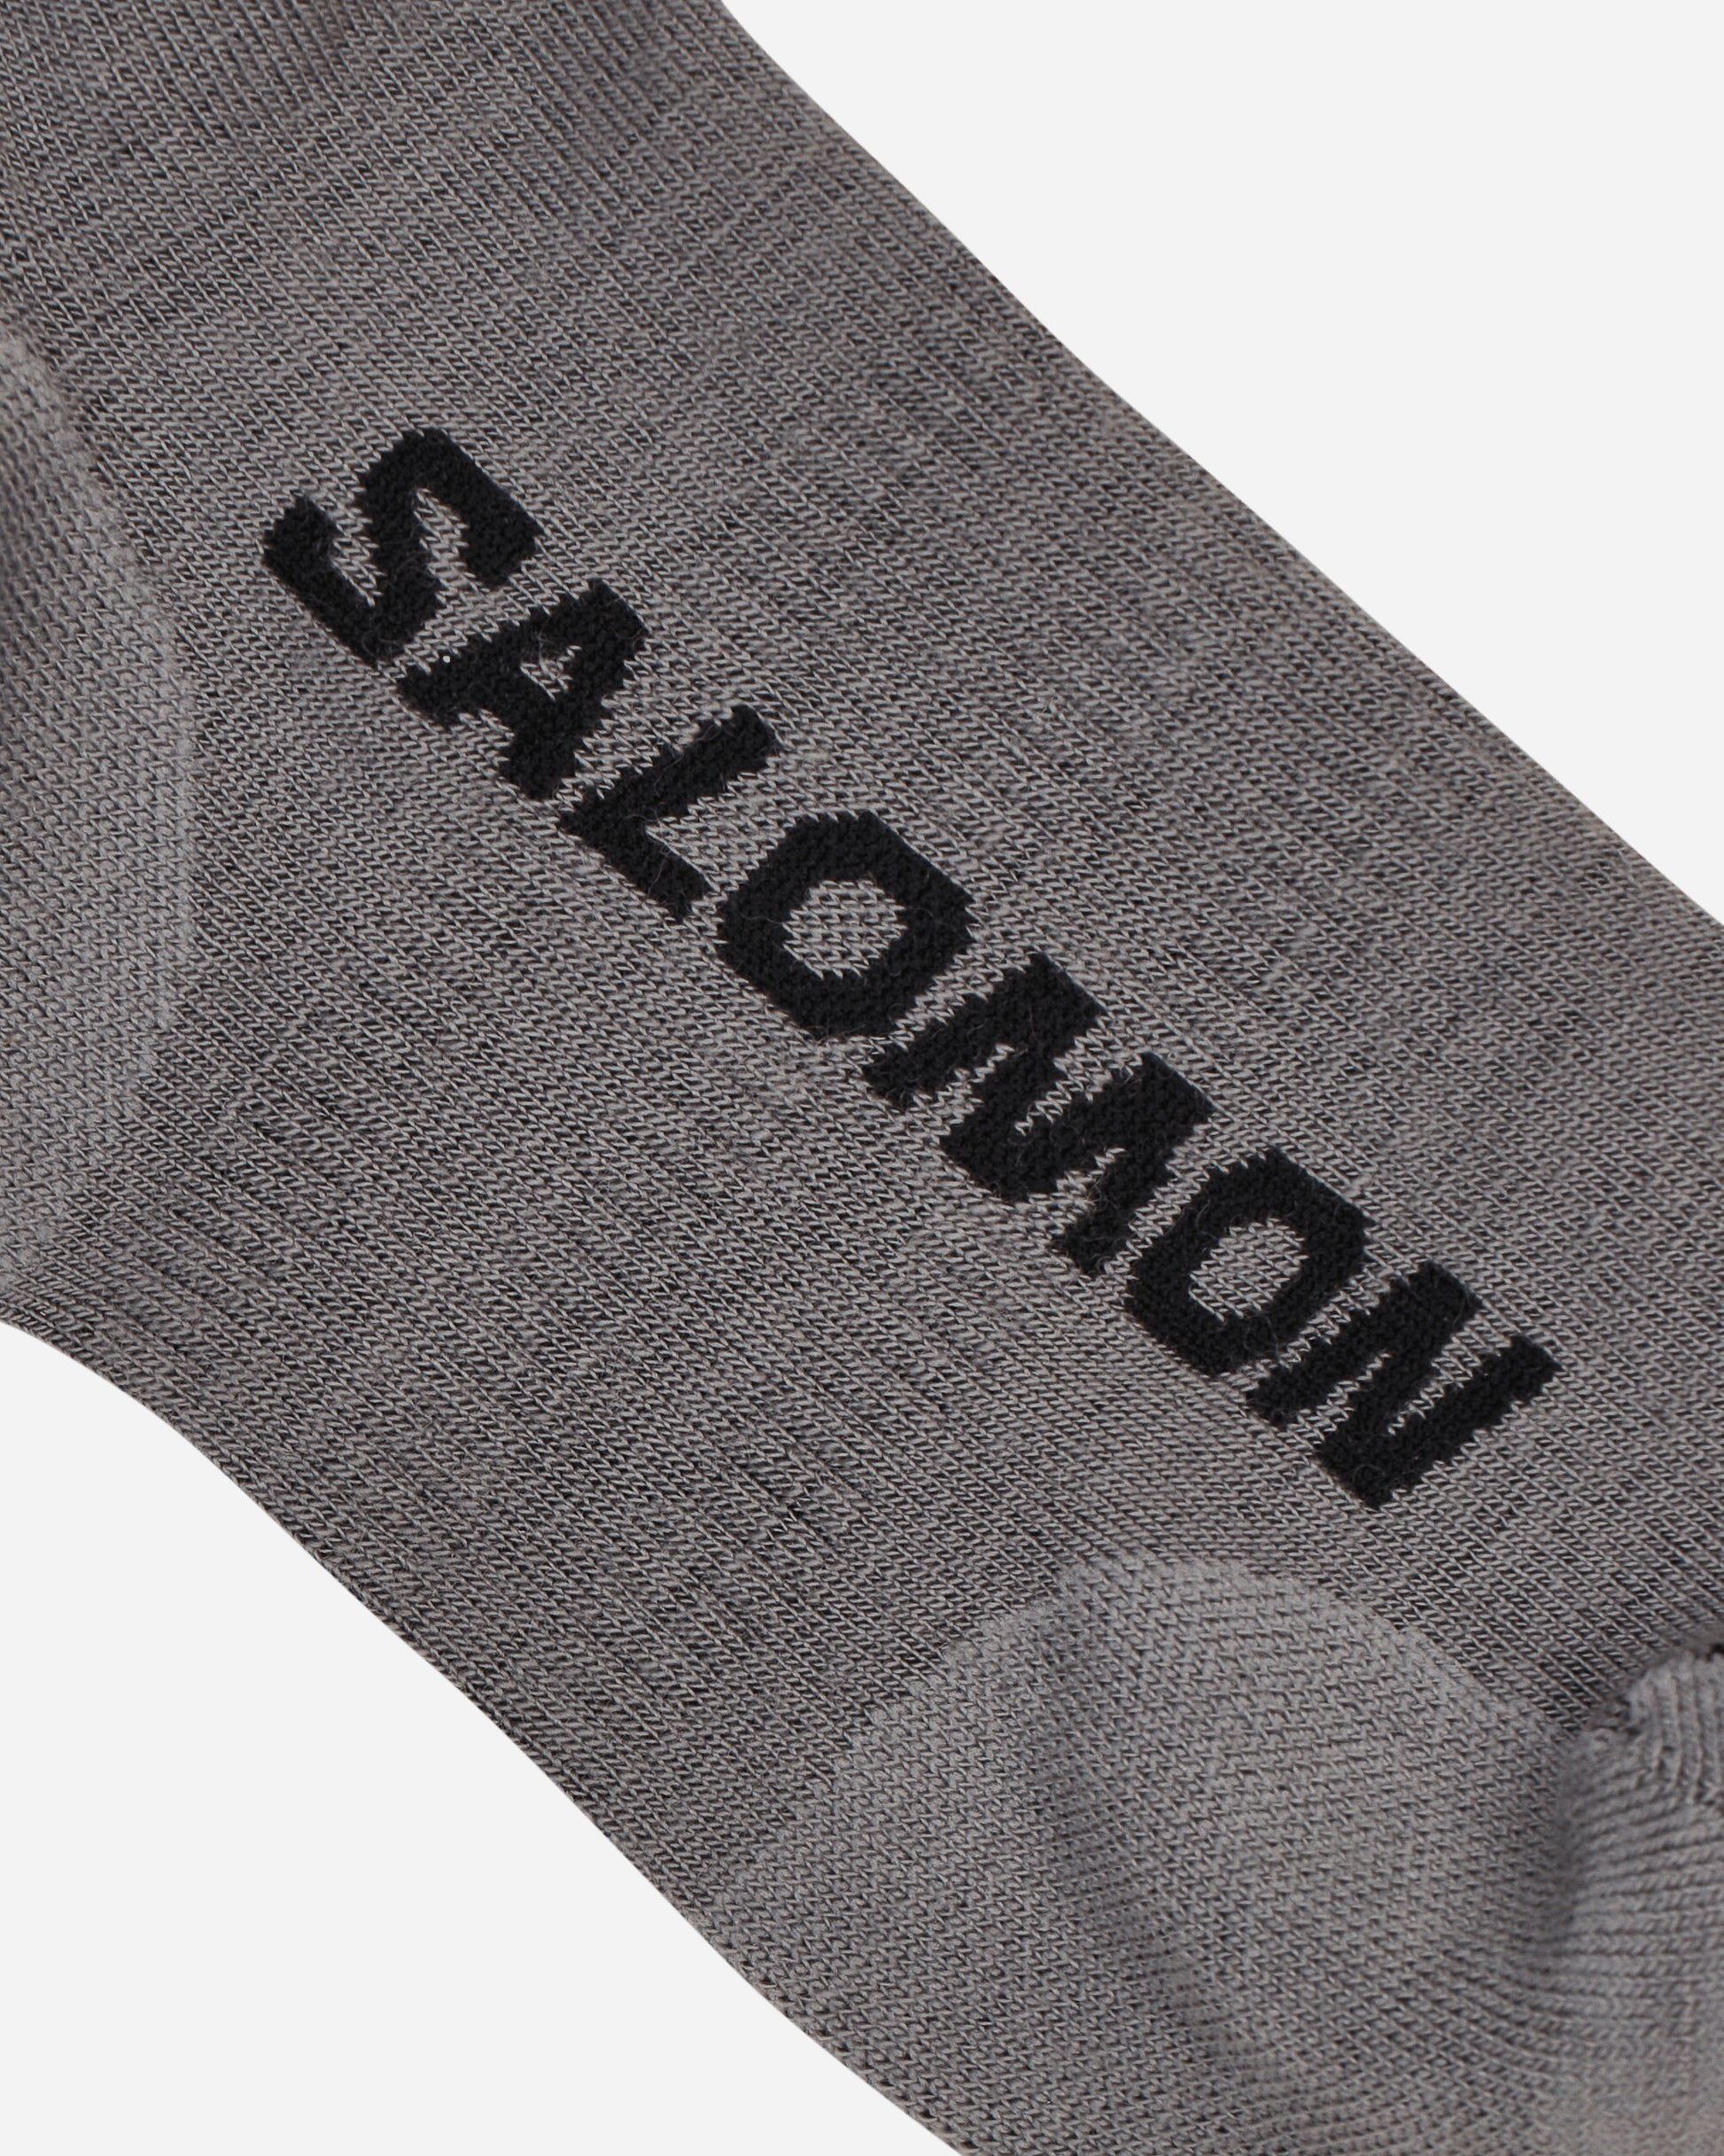 Salomon Sunday Smart Ankle Shark Skin/Black Underwear Socks LC2257900